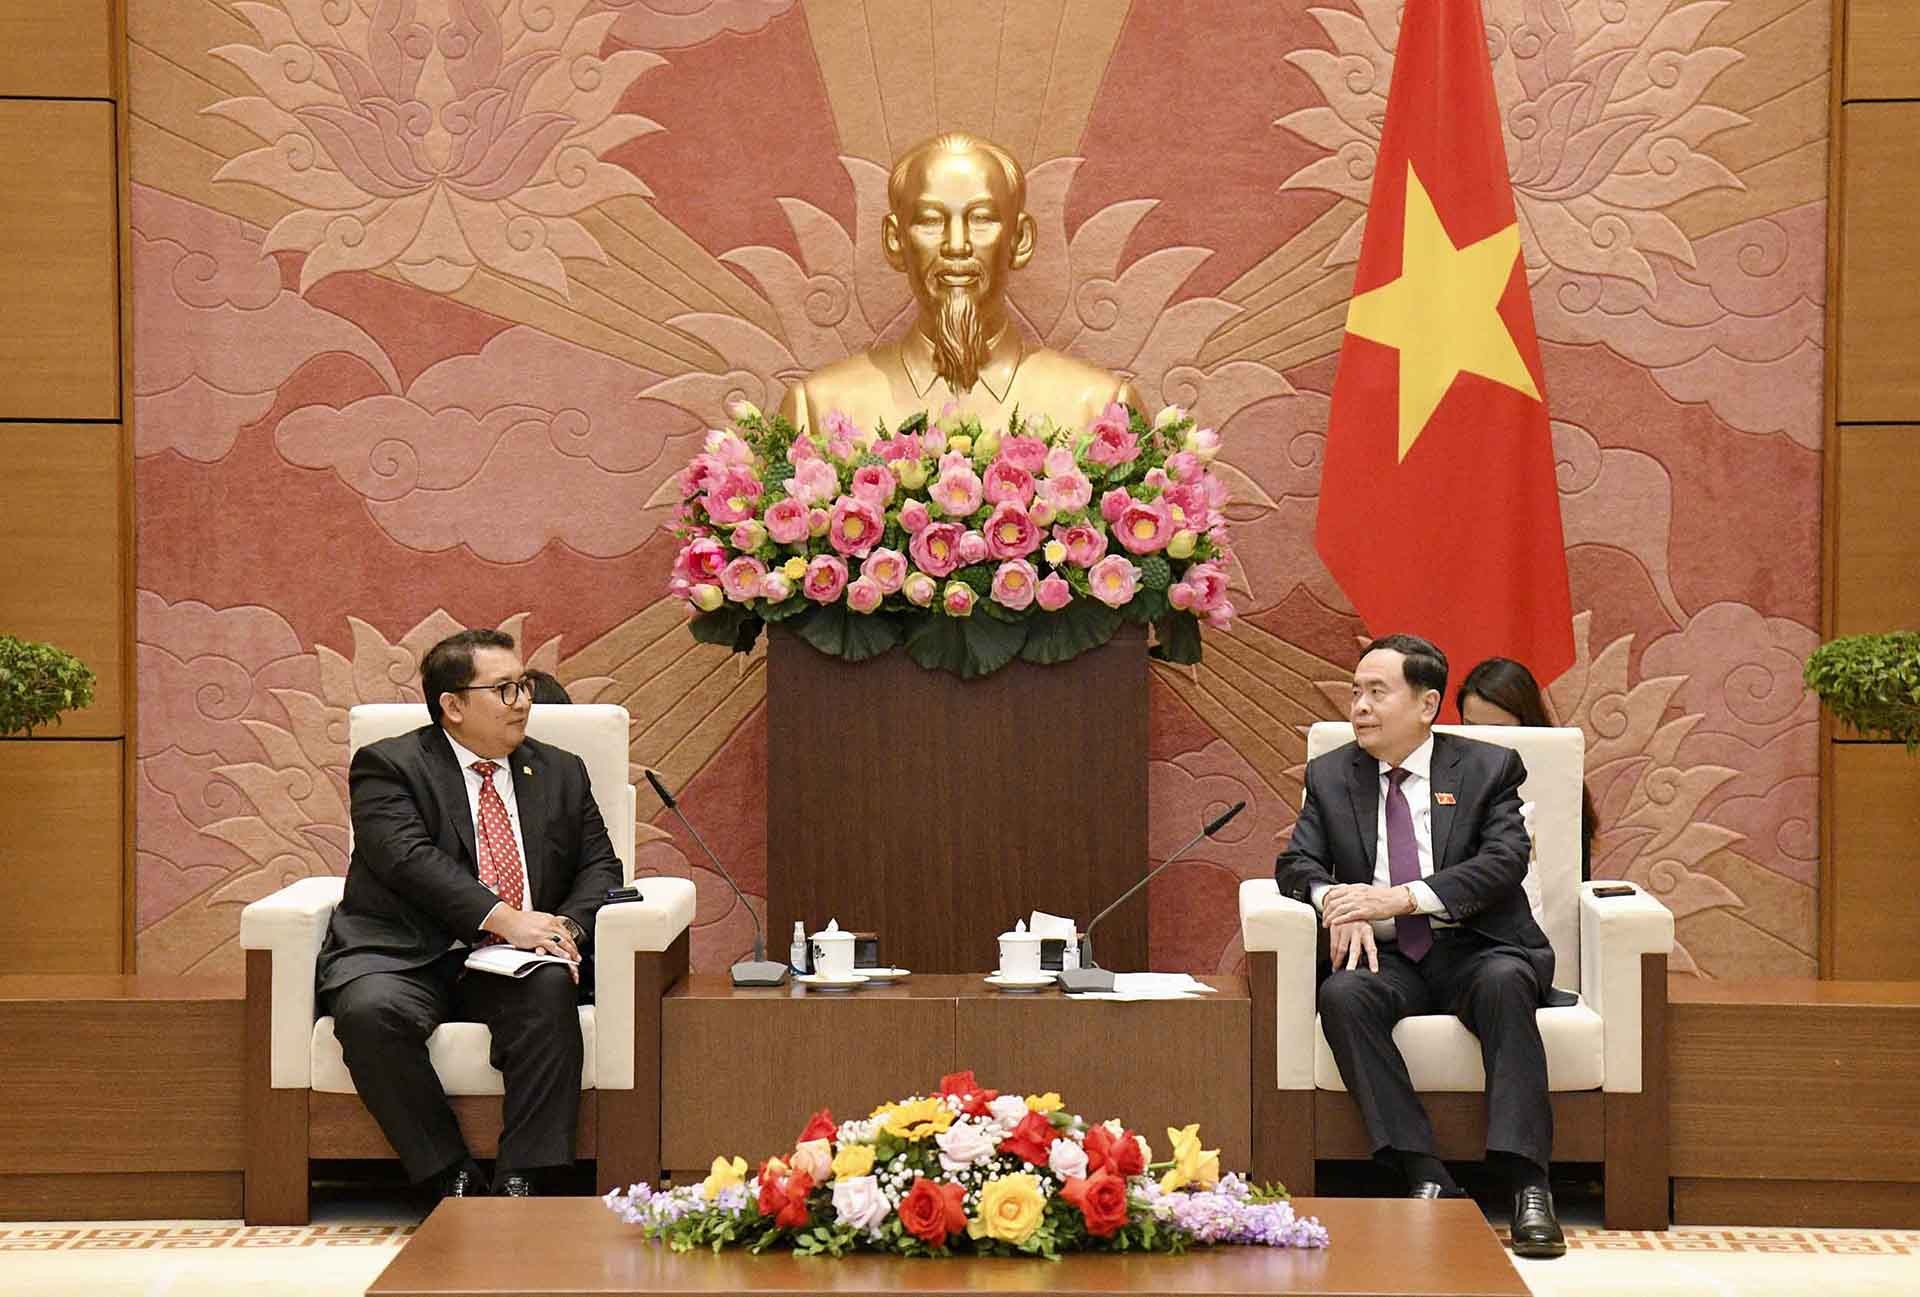 Hợp tác nghị viện tiếp tục góp phần thúc đẩy quan hệ Đối tác chiến lược Việt Nam-Indonesia